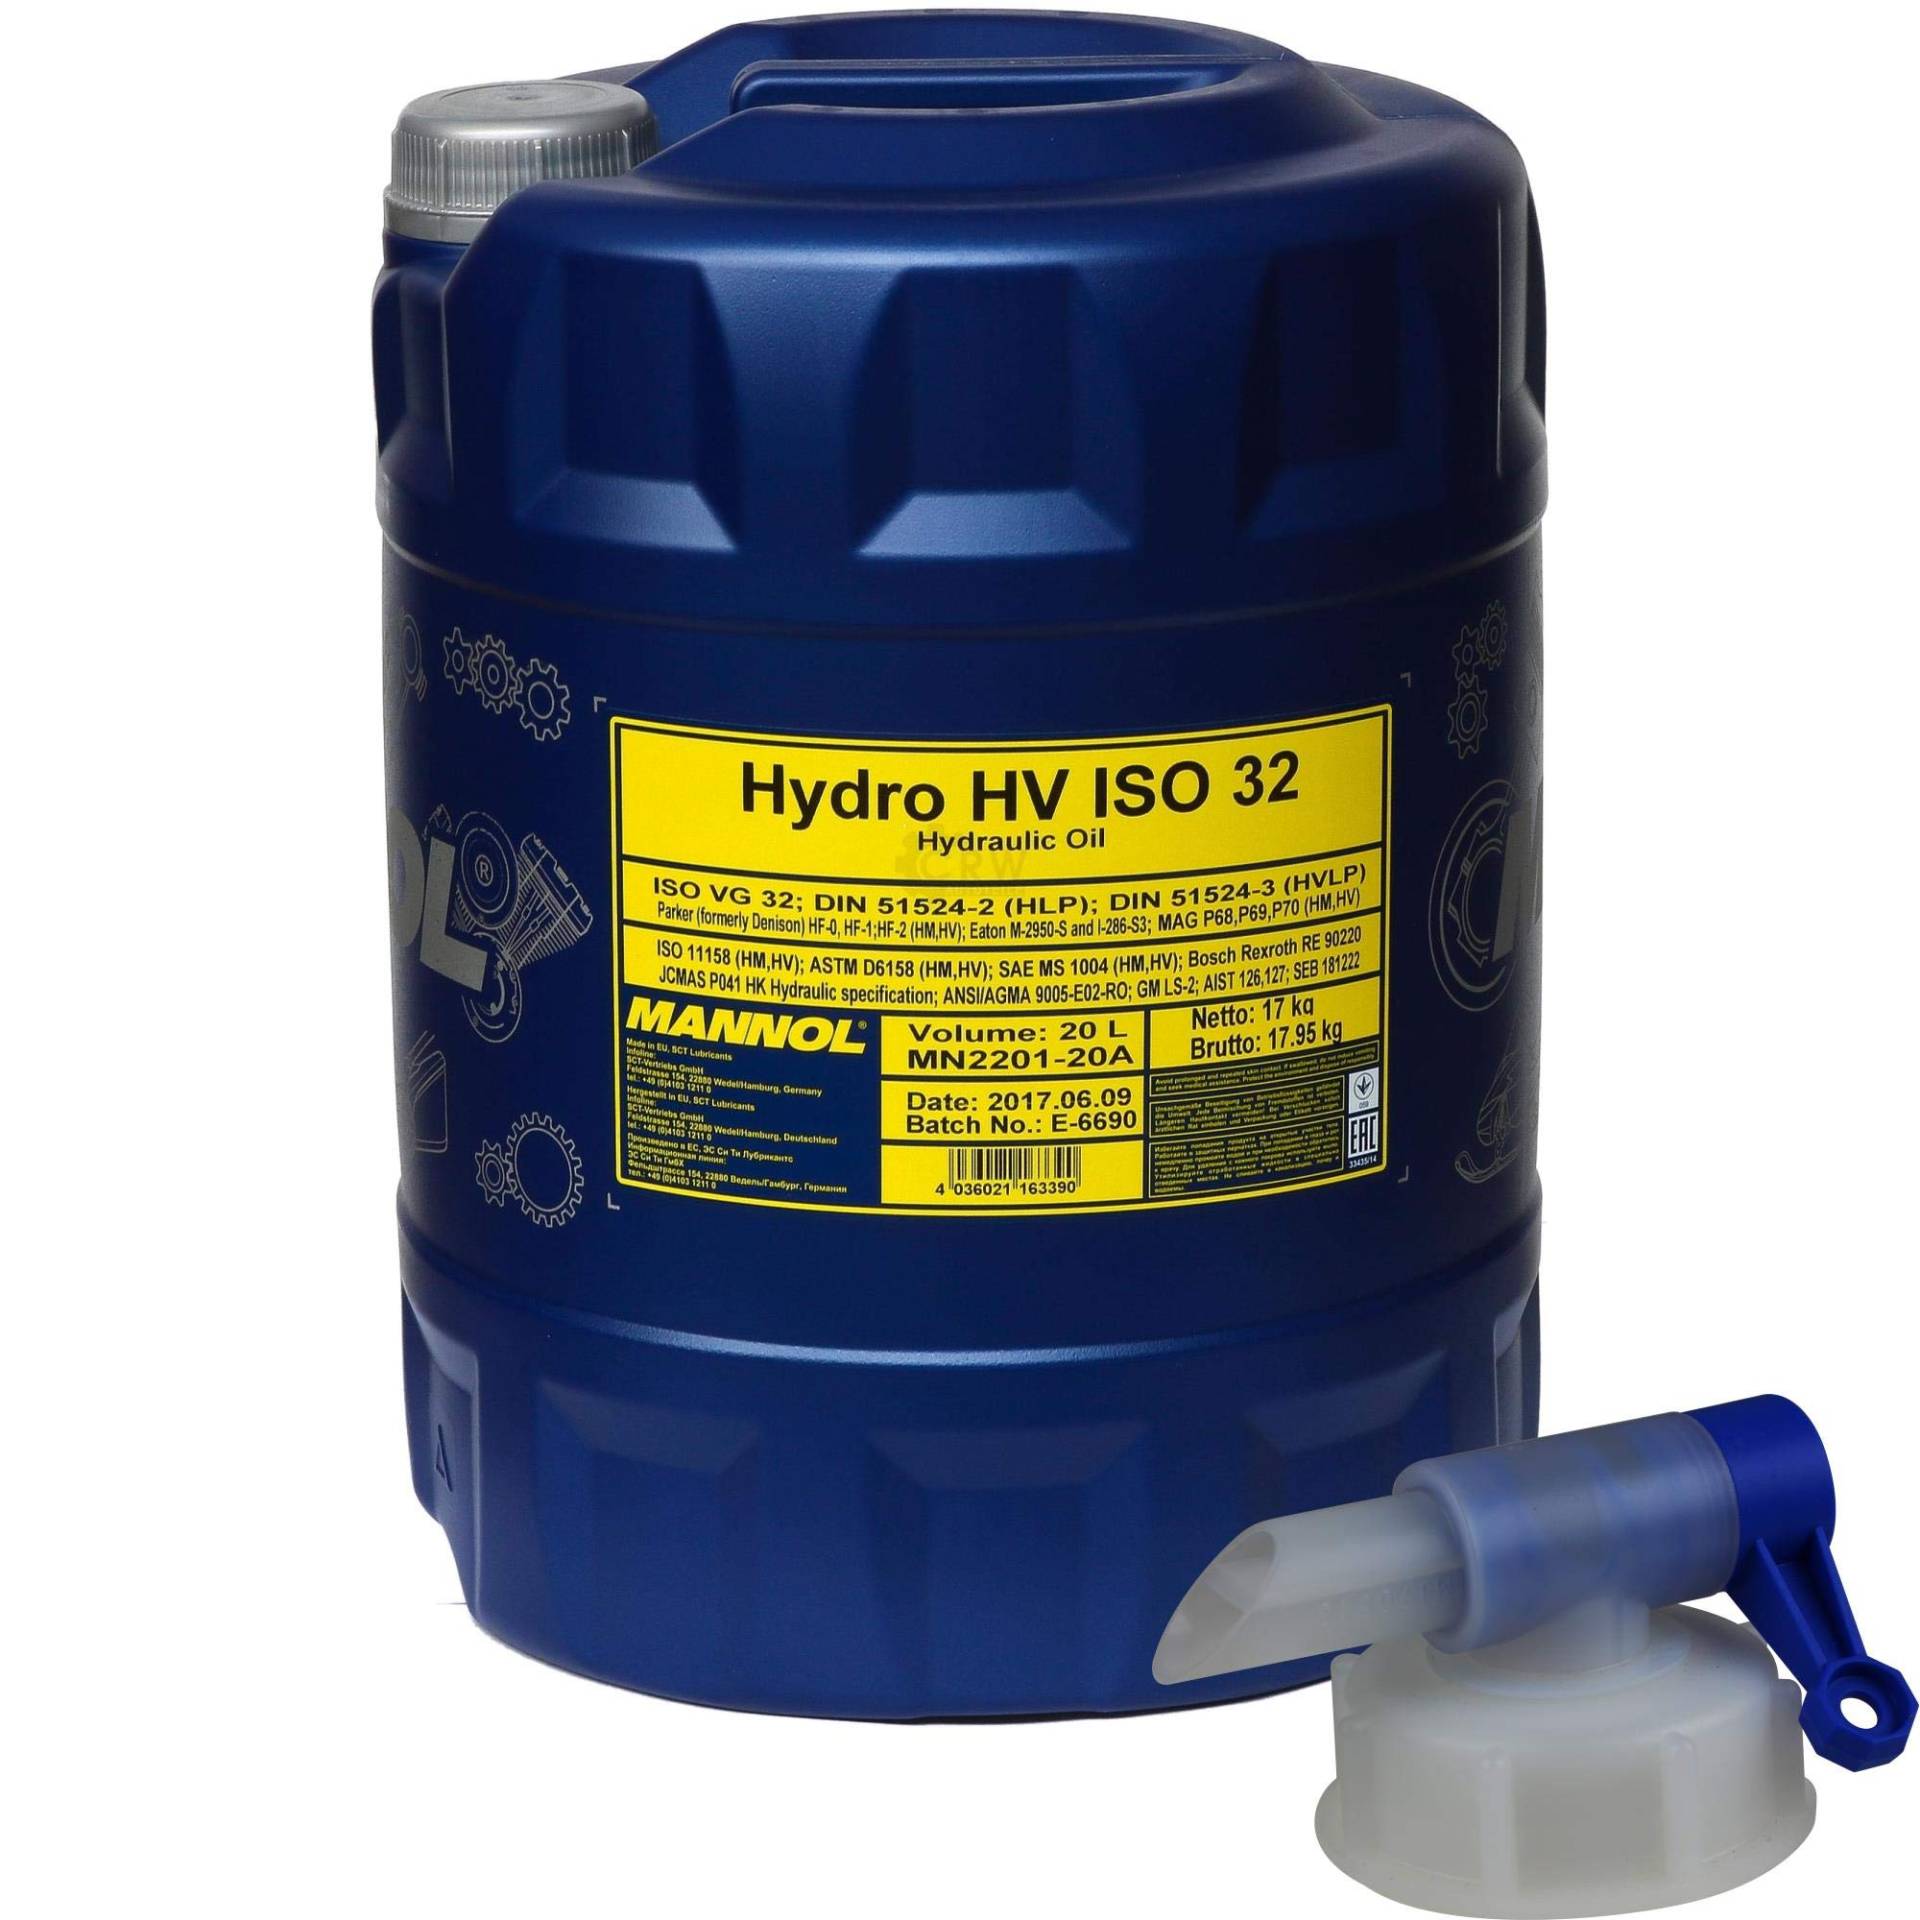 20 L Mannol Hydro HV ISO 32 Hydrauliköl HVLP 32 Öl Oil DIN 51524/3 + Auslaufhahn von QR-Parts